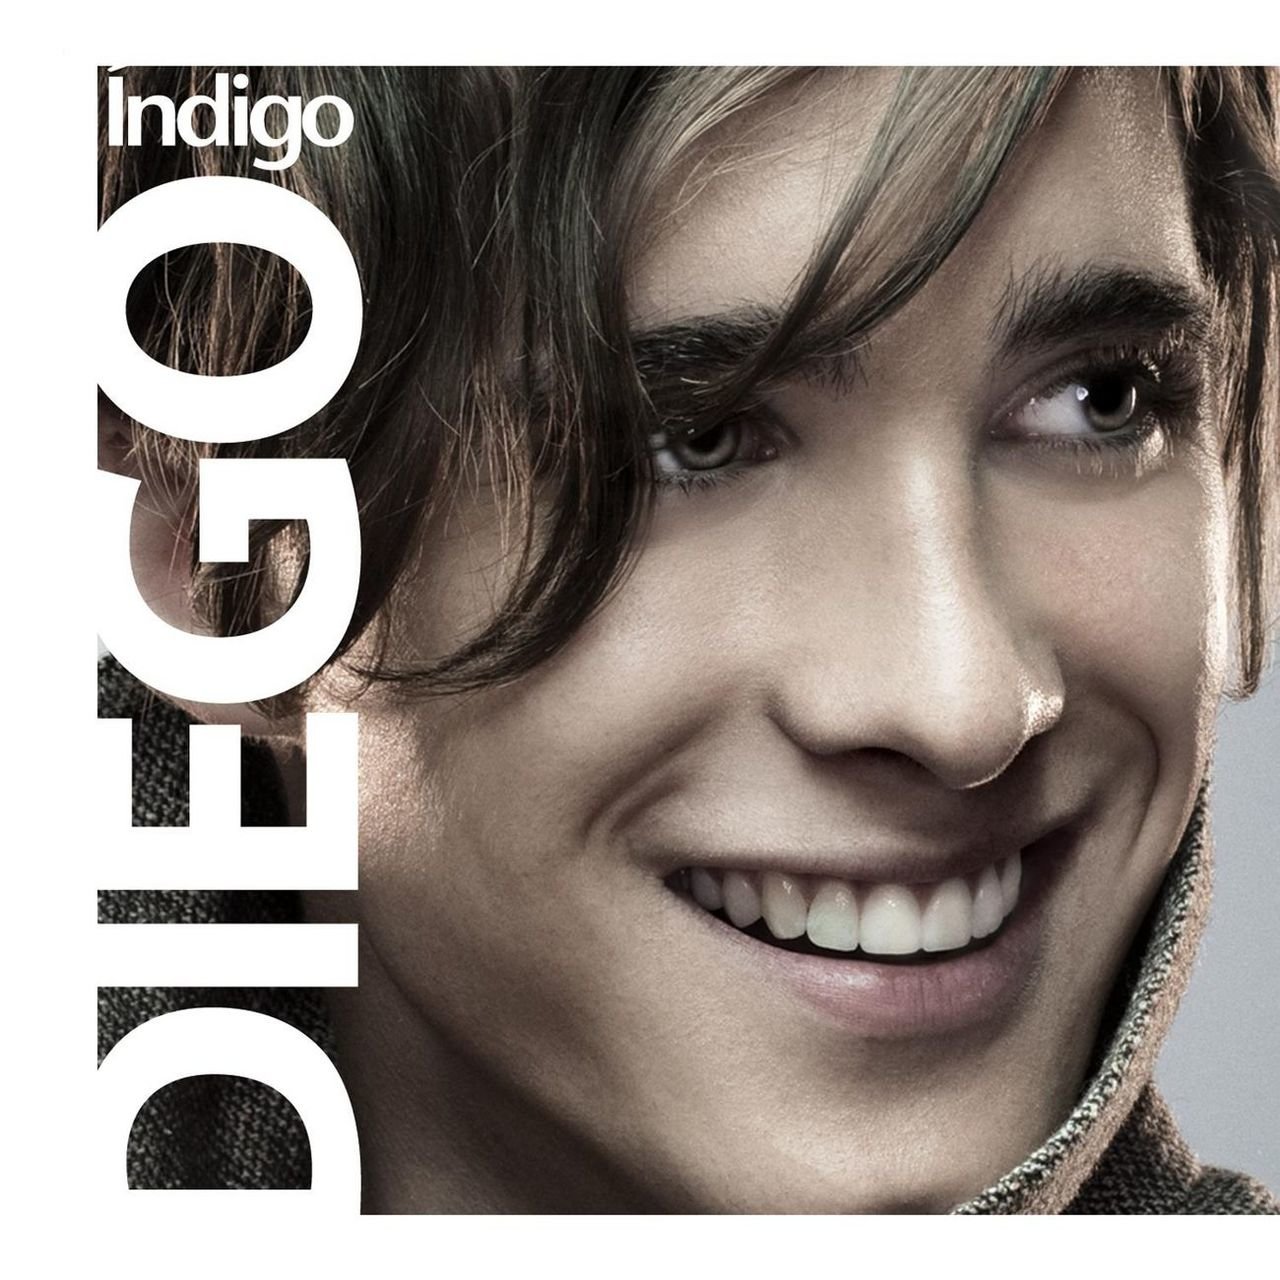 Diego Boneta Índigo cover artwork